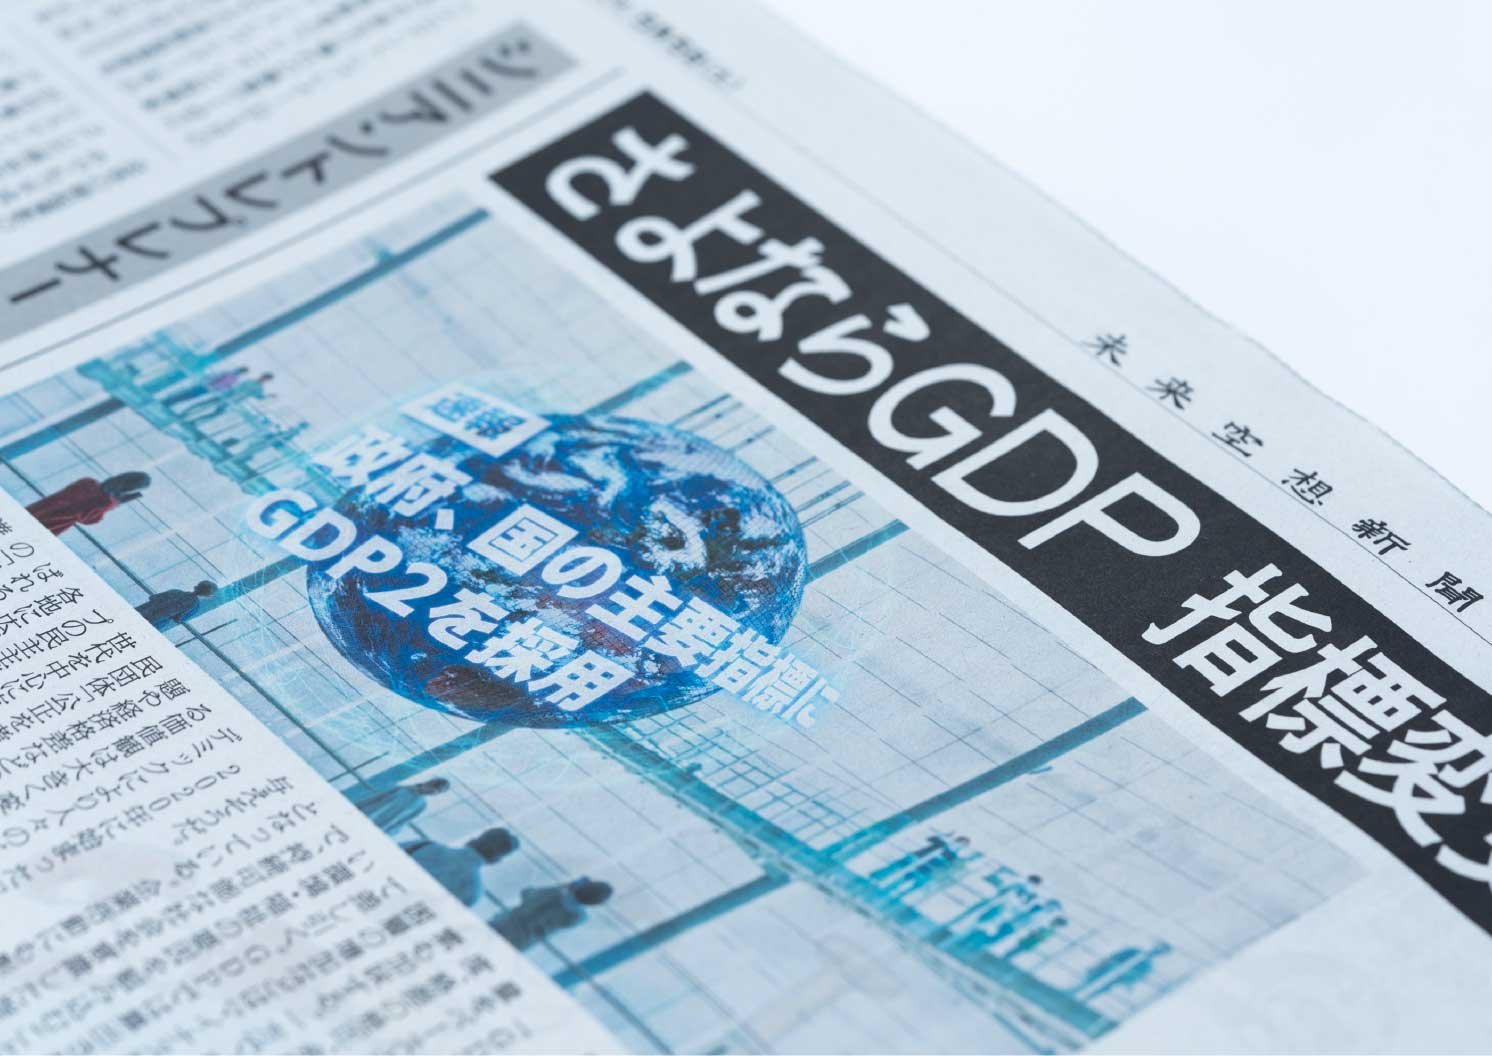 GDPに関する未来空想新聞の一面 | Make New Magazine「未来の定番」をつくるために、パナソニックのリアルな姿を伝えるメディア